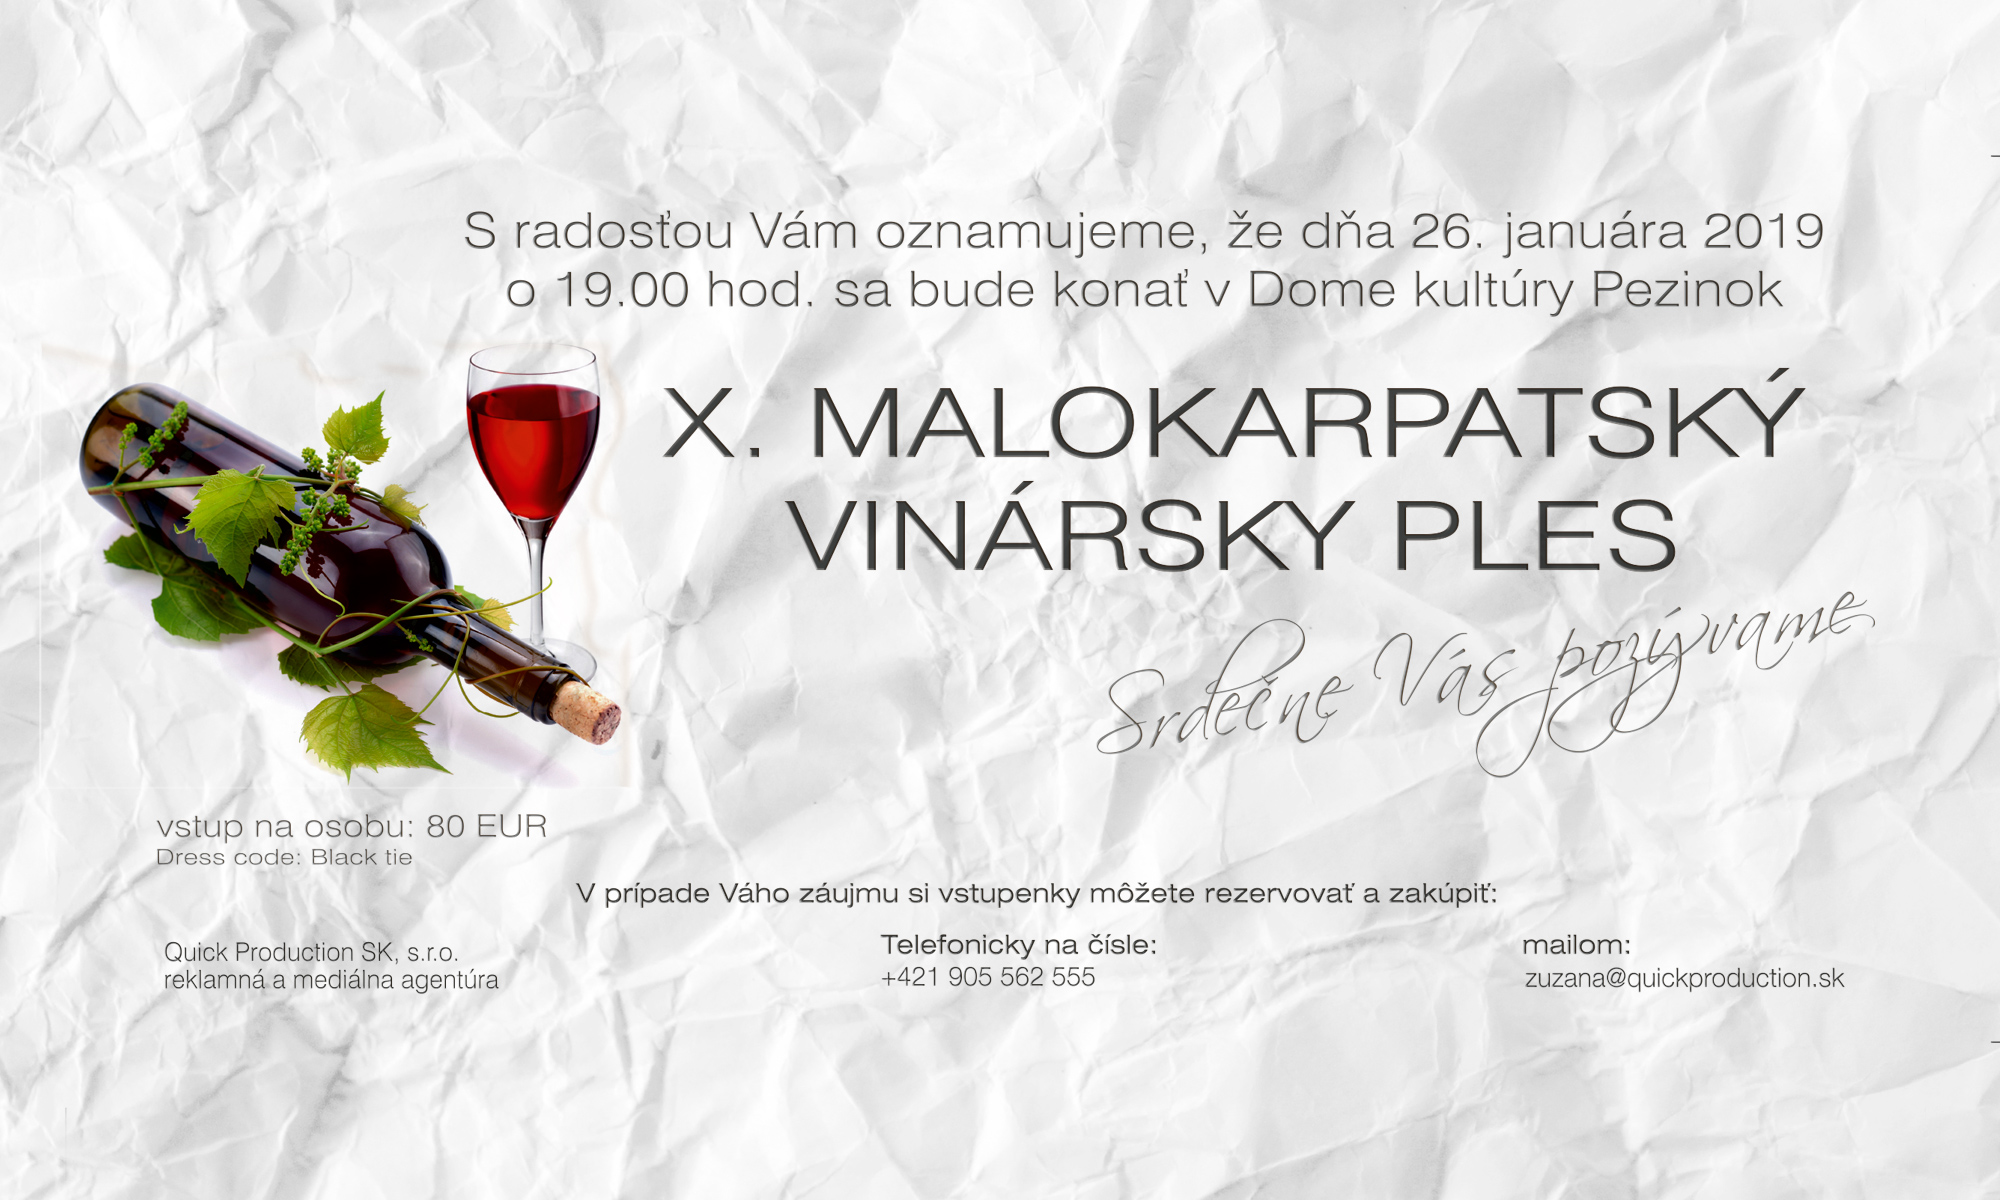 X. Malokarpatský vinársky ples 2019 Pezinok